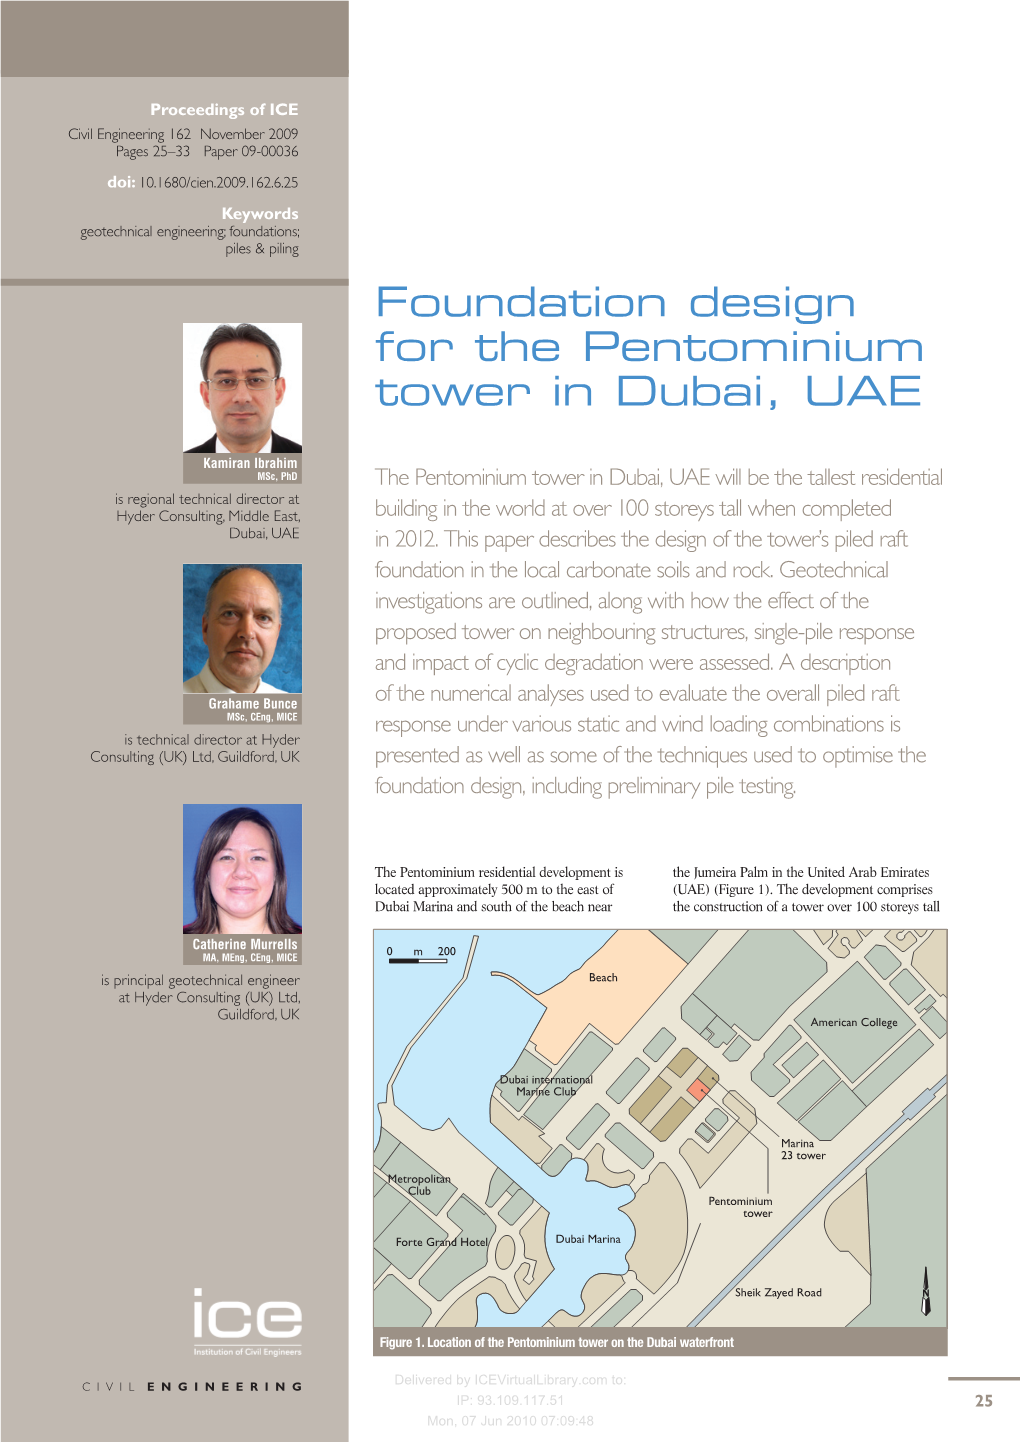 Foundation Design for the Pentominium Tower in Dubai, UAE